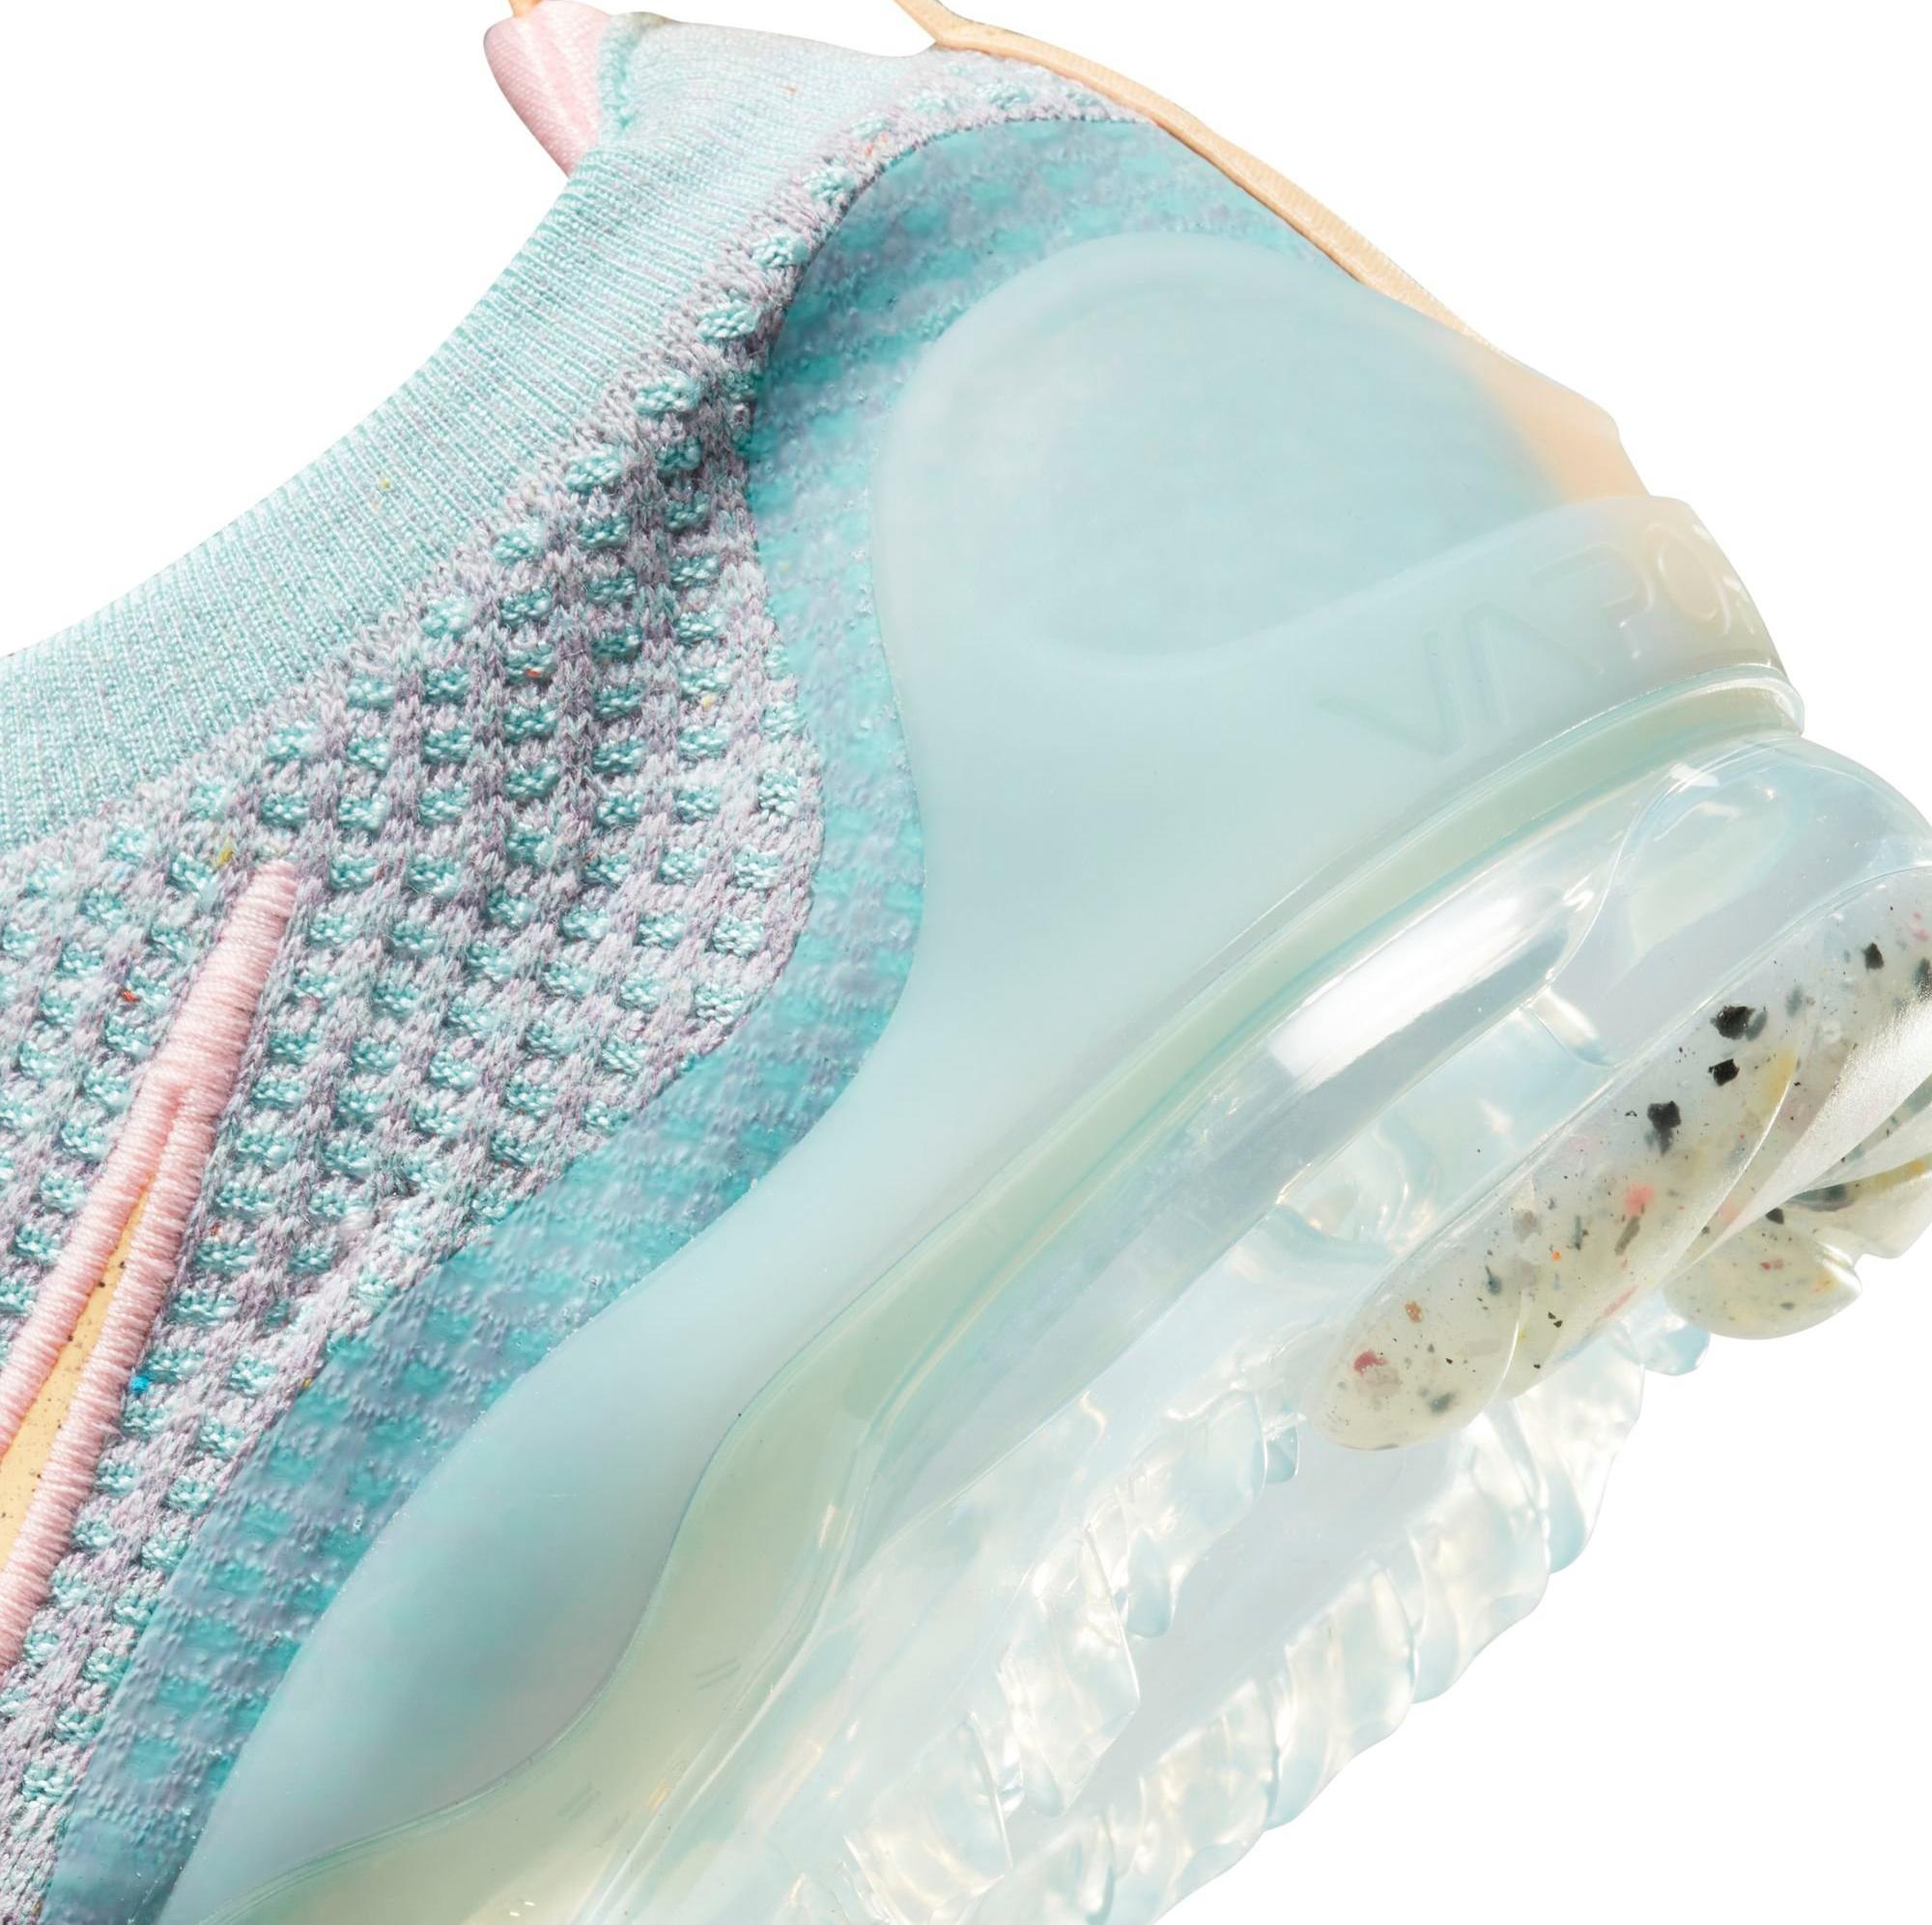 Sneakers Release – Nike Air VaporMax 2021 Flyknit “Light Dew/Melon 